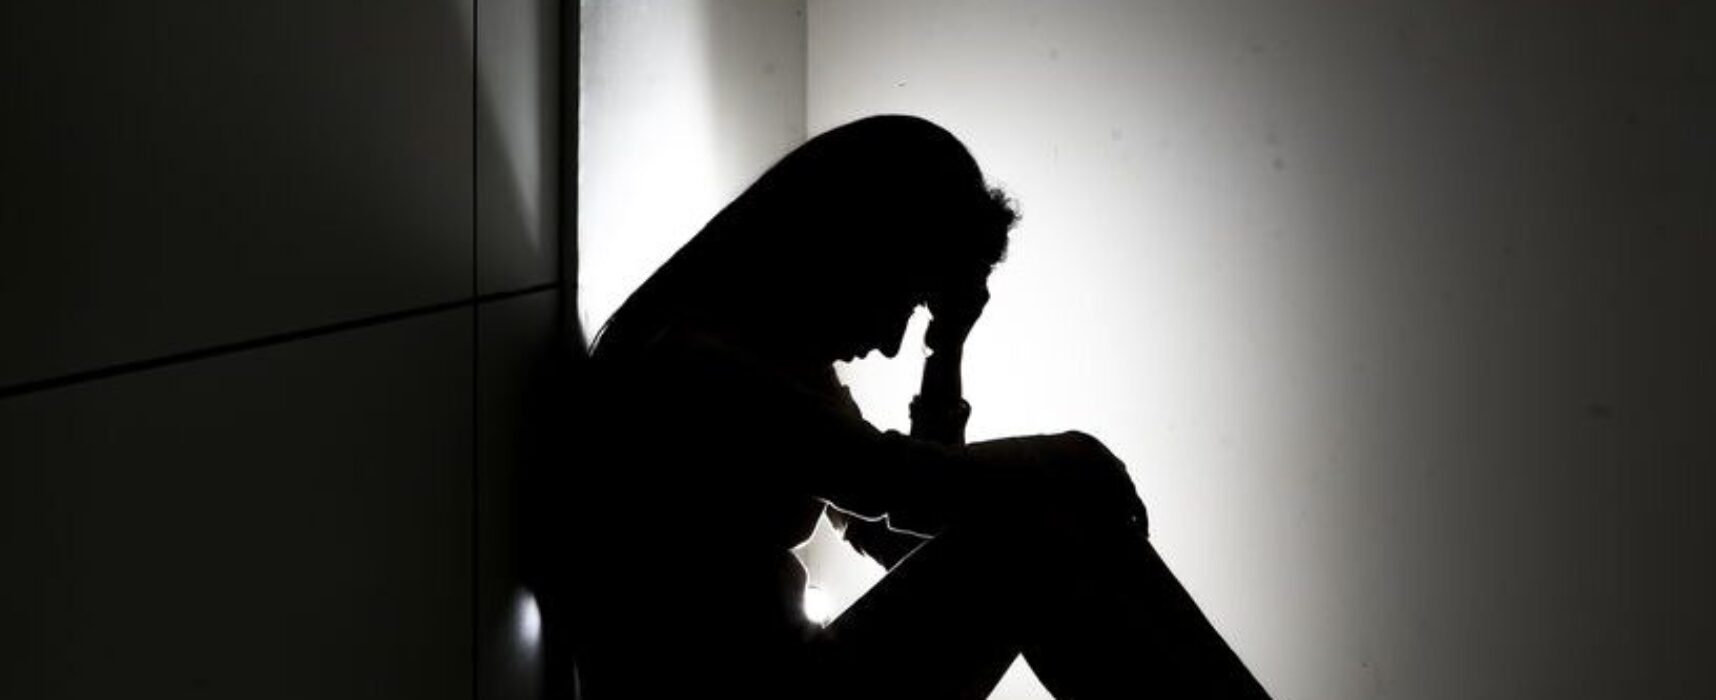 ABP treina profissionais para identificar e tratar tendências suicidas